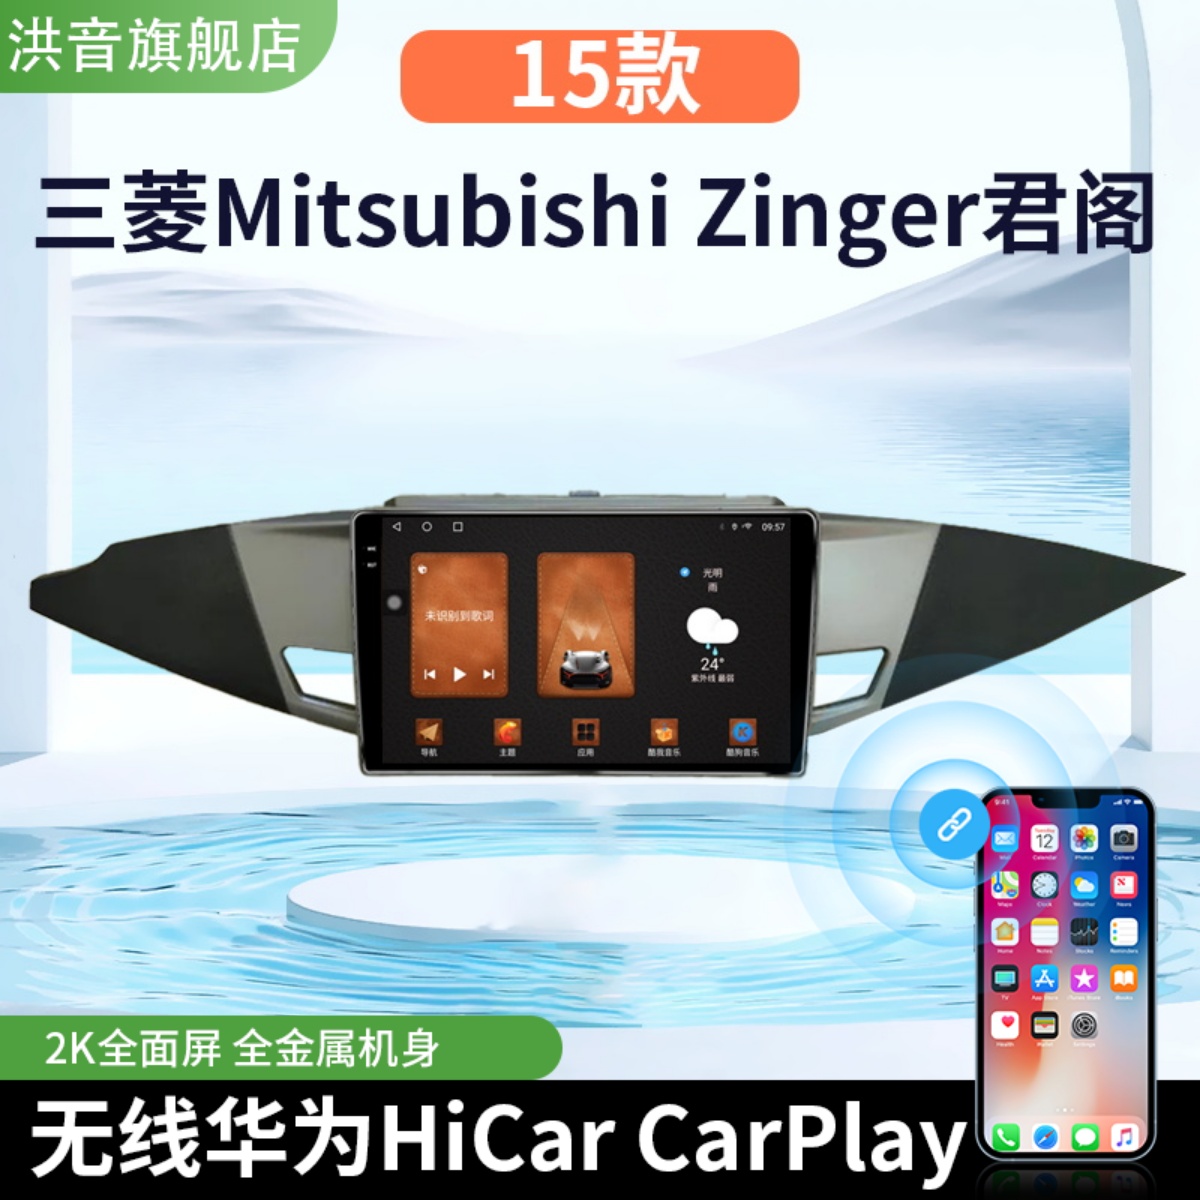 三菱15款Mitsubishi Zinger君阁专用改装中控显示多媒体大屏导航